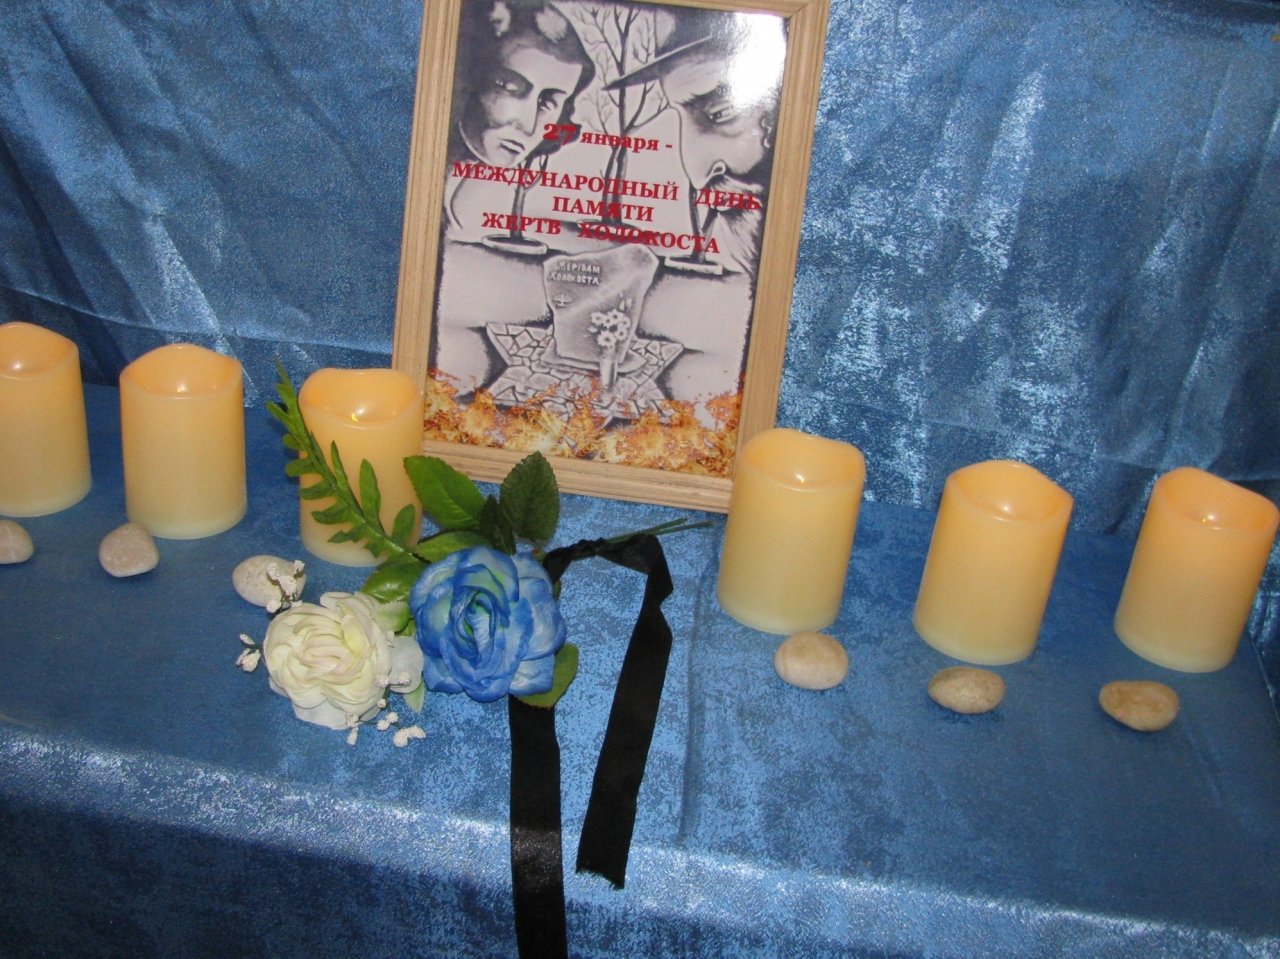 Шесть свечей в память о жертвах холокоста